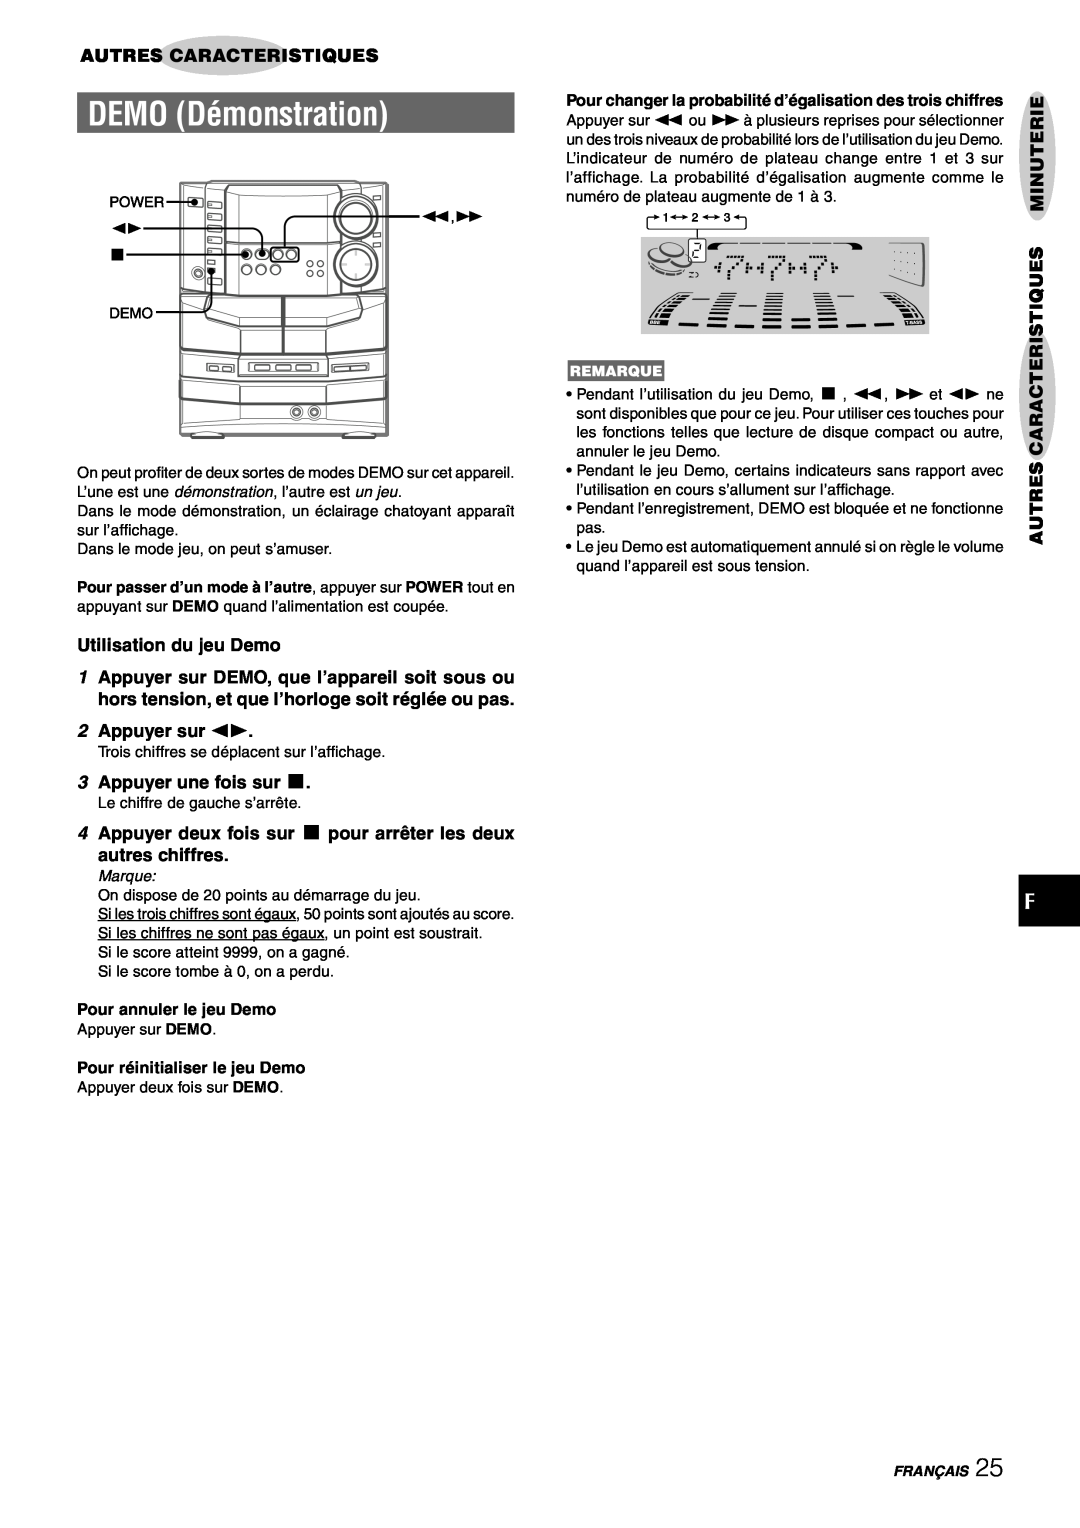 Sony NSX-AJ80 manual DEMO Démonstration, Autres Caracteristiques, Utilisation du jeu Demo, 2Appuyer sur d, autres chiffres 